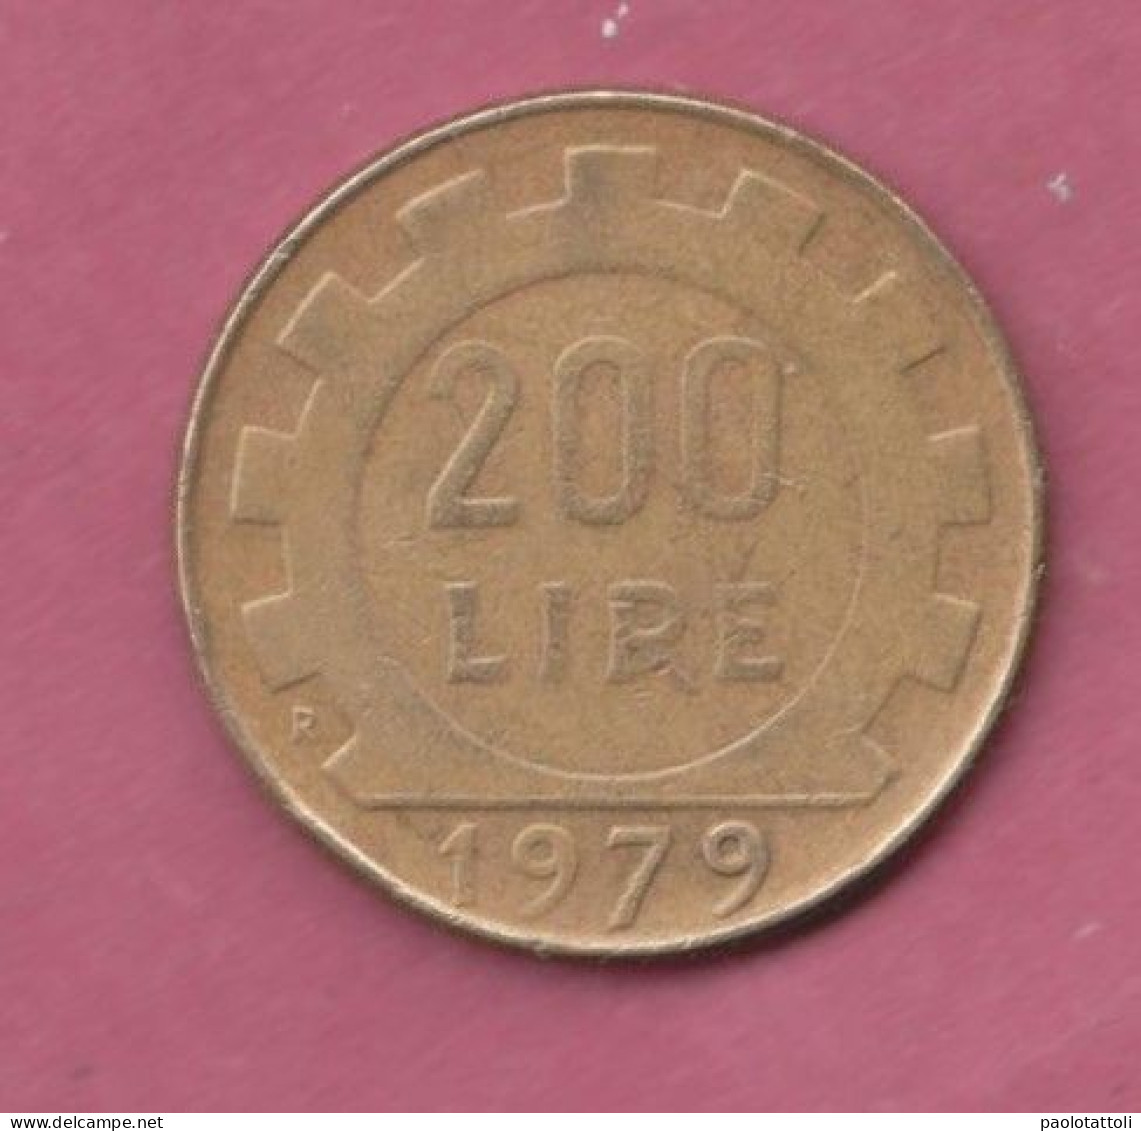 Italia, 1979- 200 Lire. -Bronzital- Obverse Allegory Of The Italian Repubblic . - 200 Lire